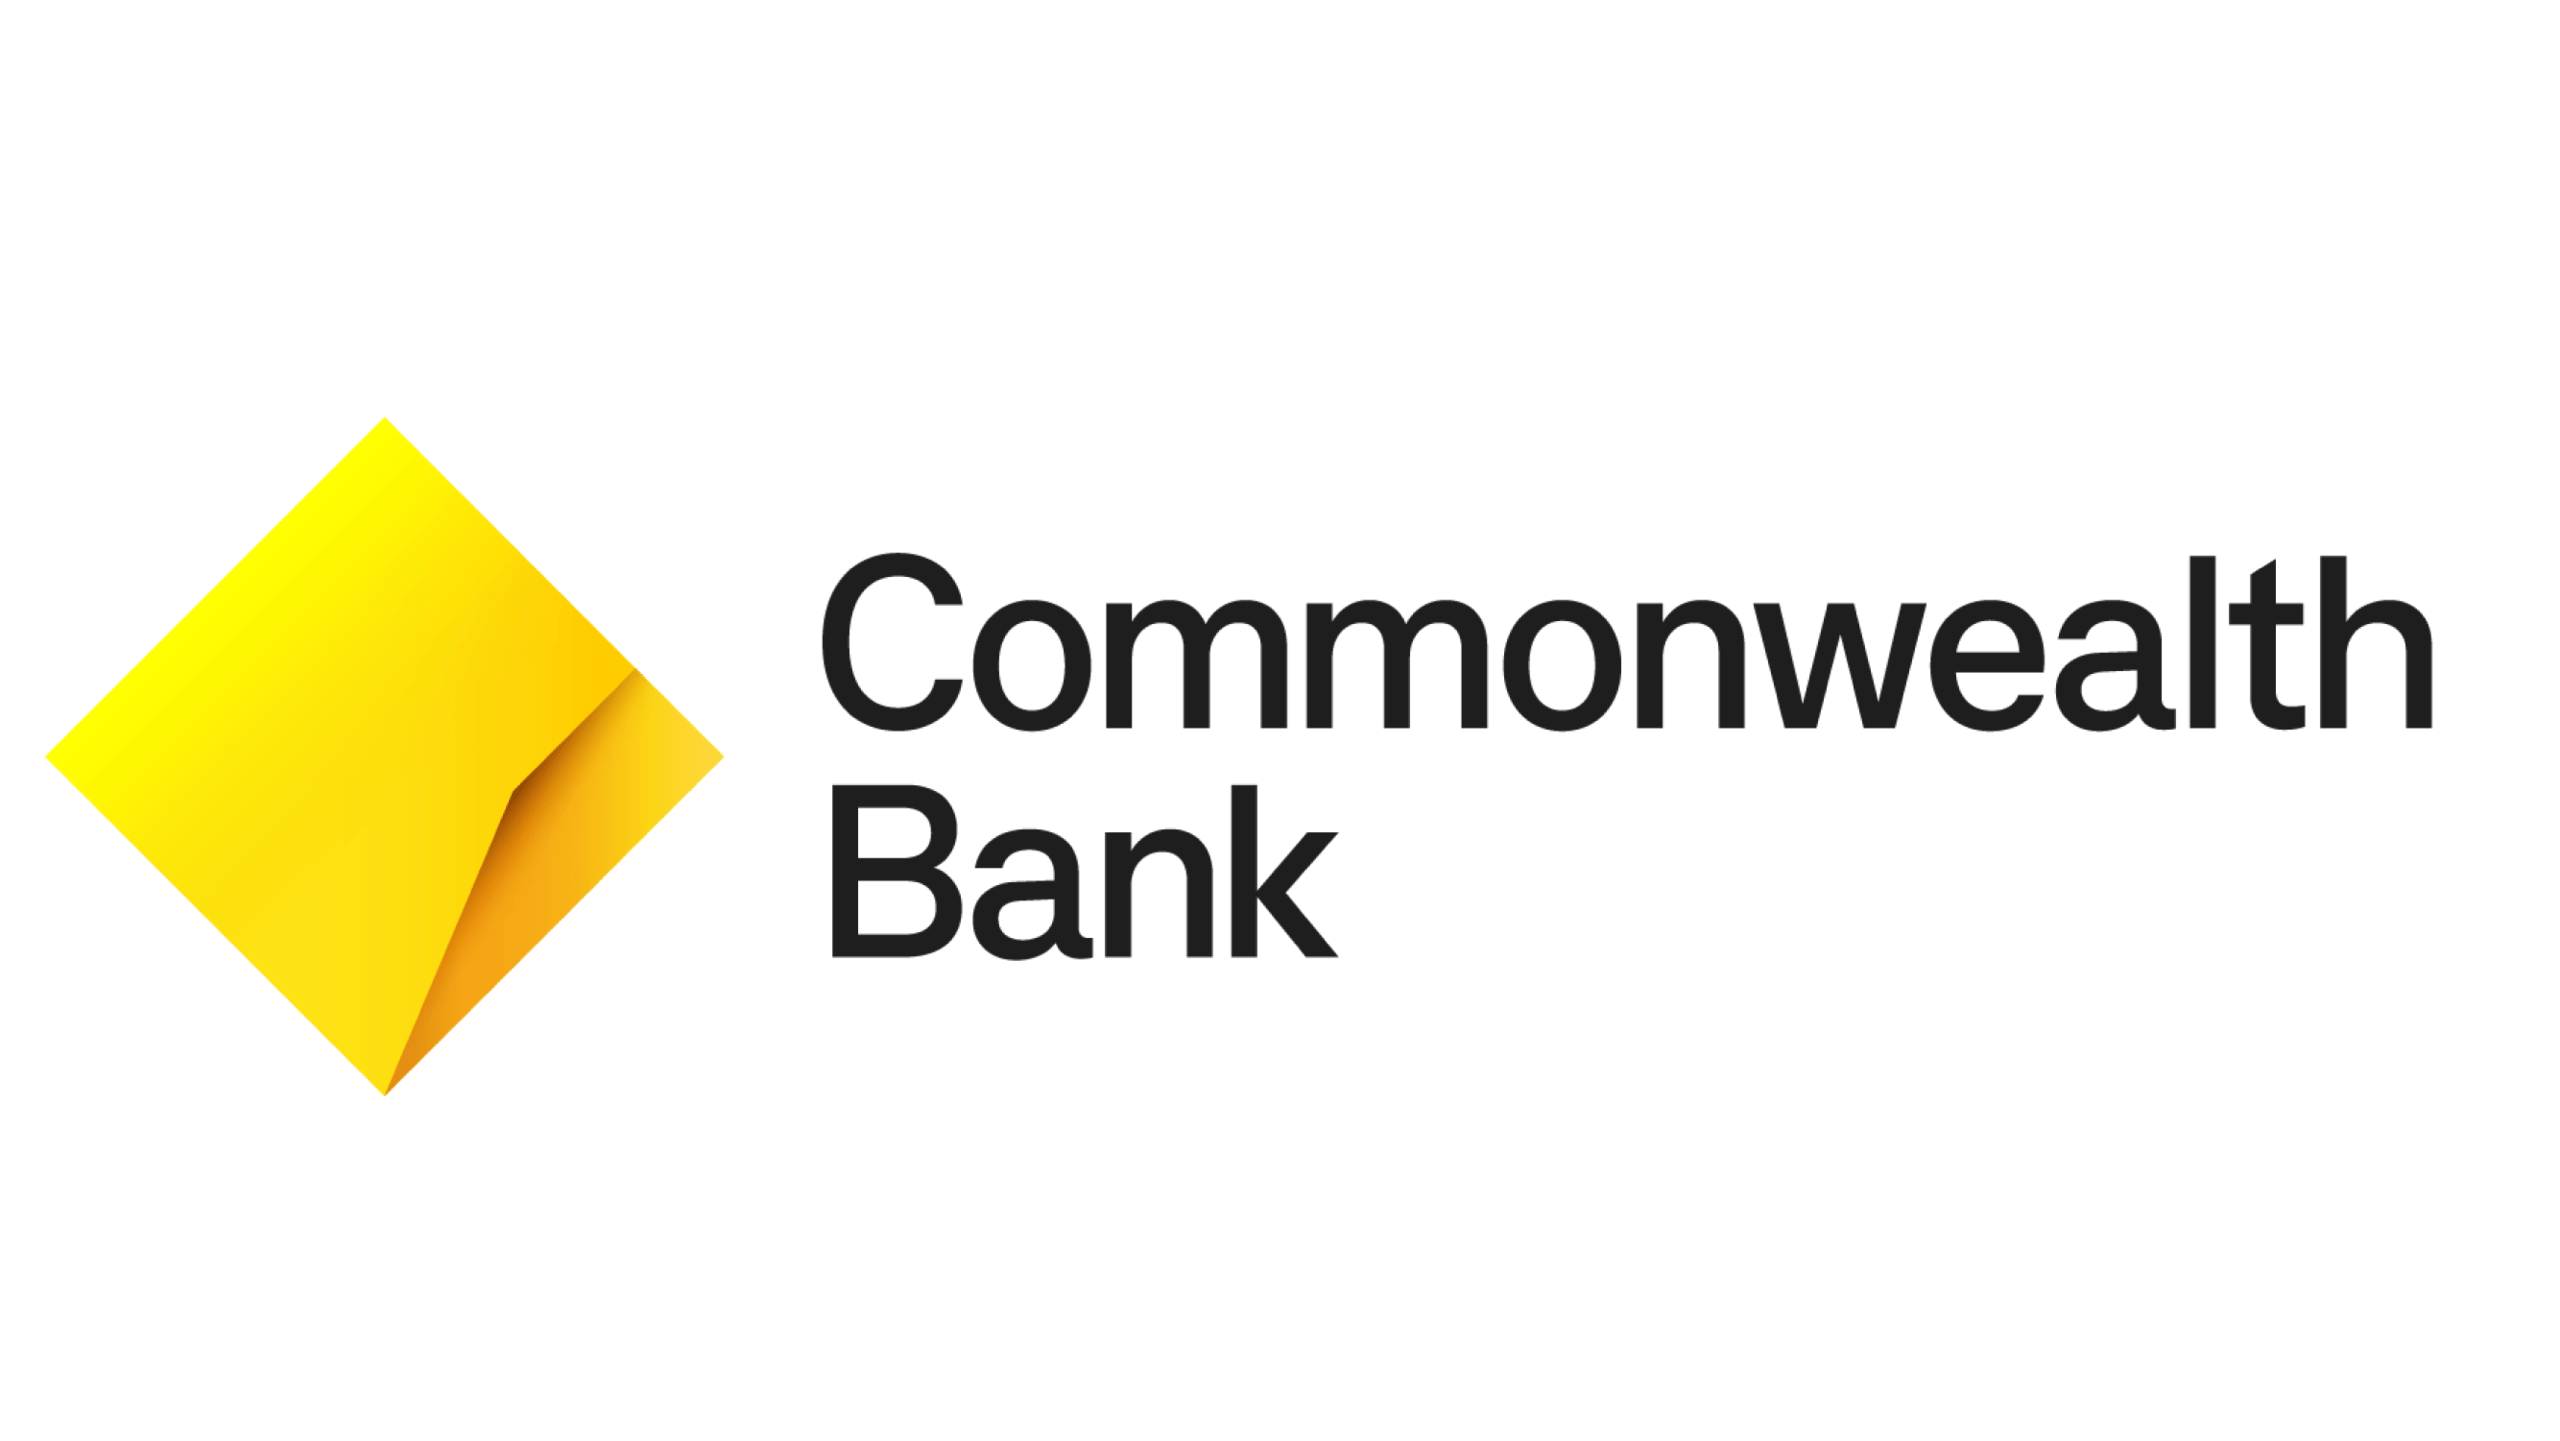 Commonwealth Bank of Australia